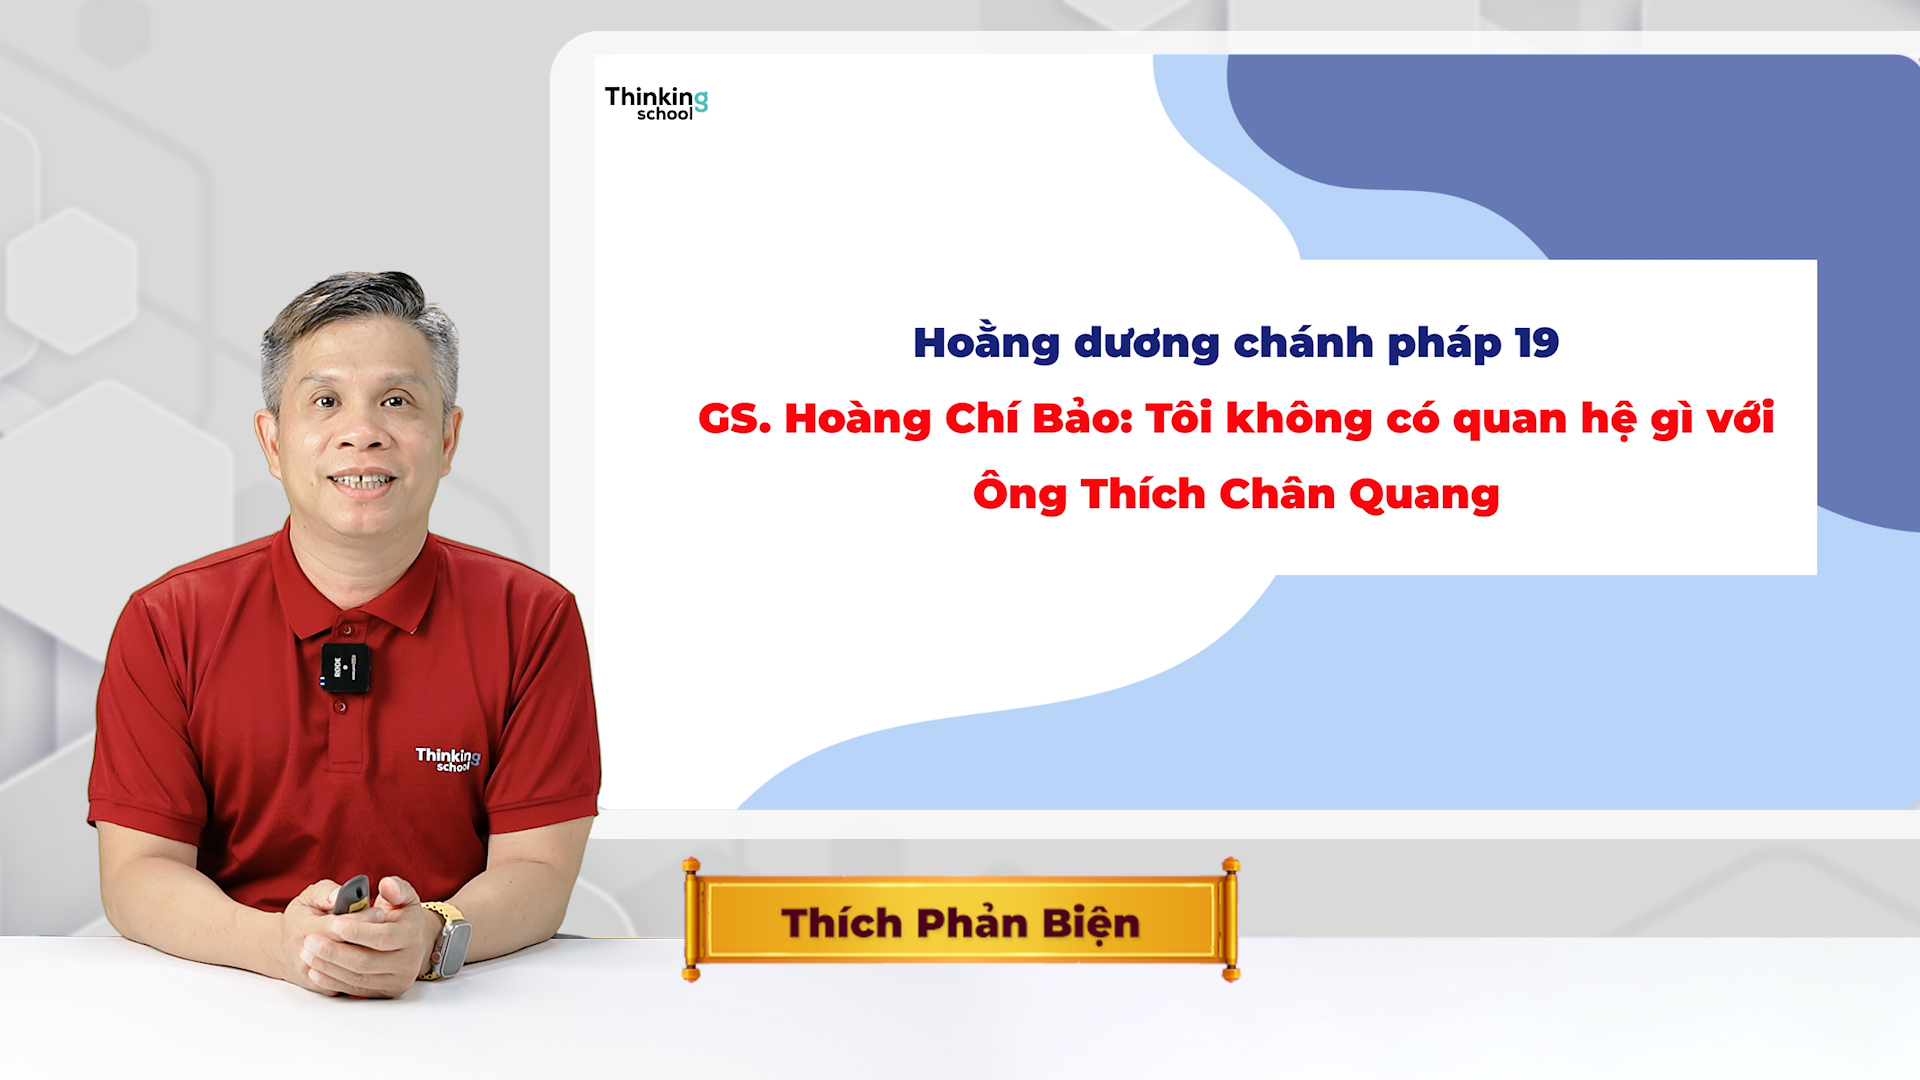 GS. Hoang Chi Bao Toi khong co quan he gi voi Ong Thich Chan Quang